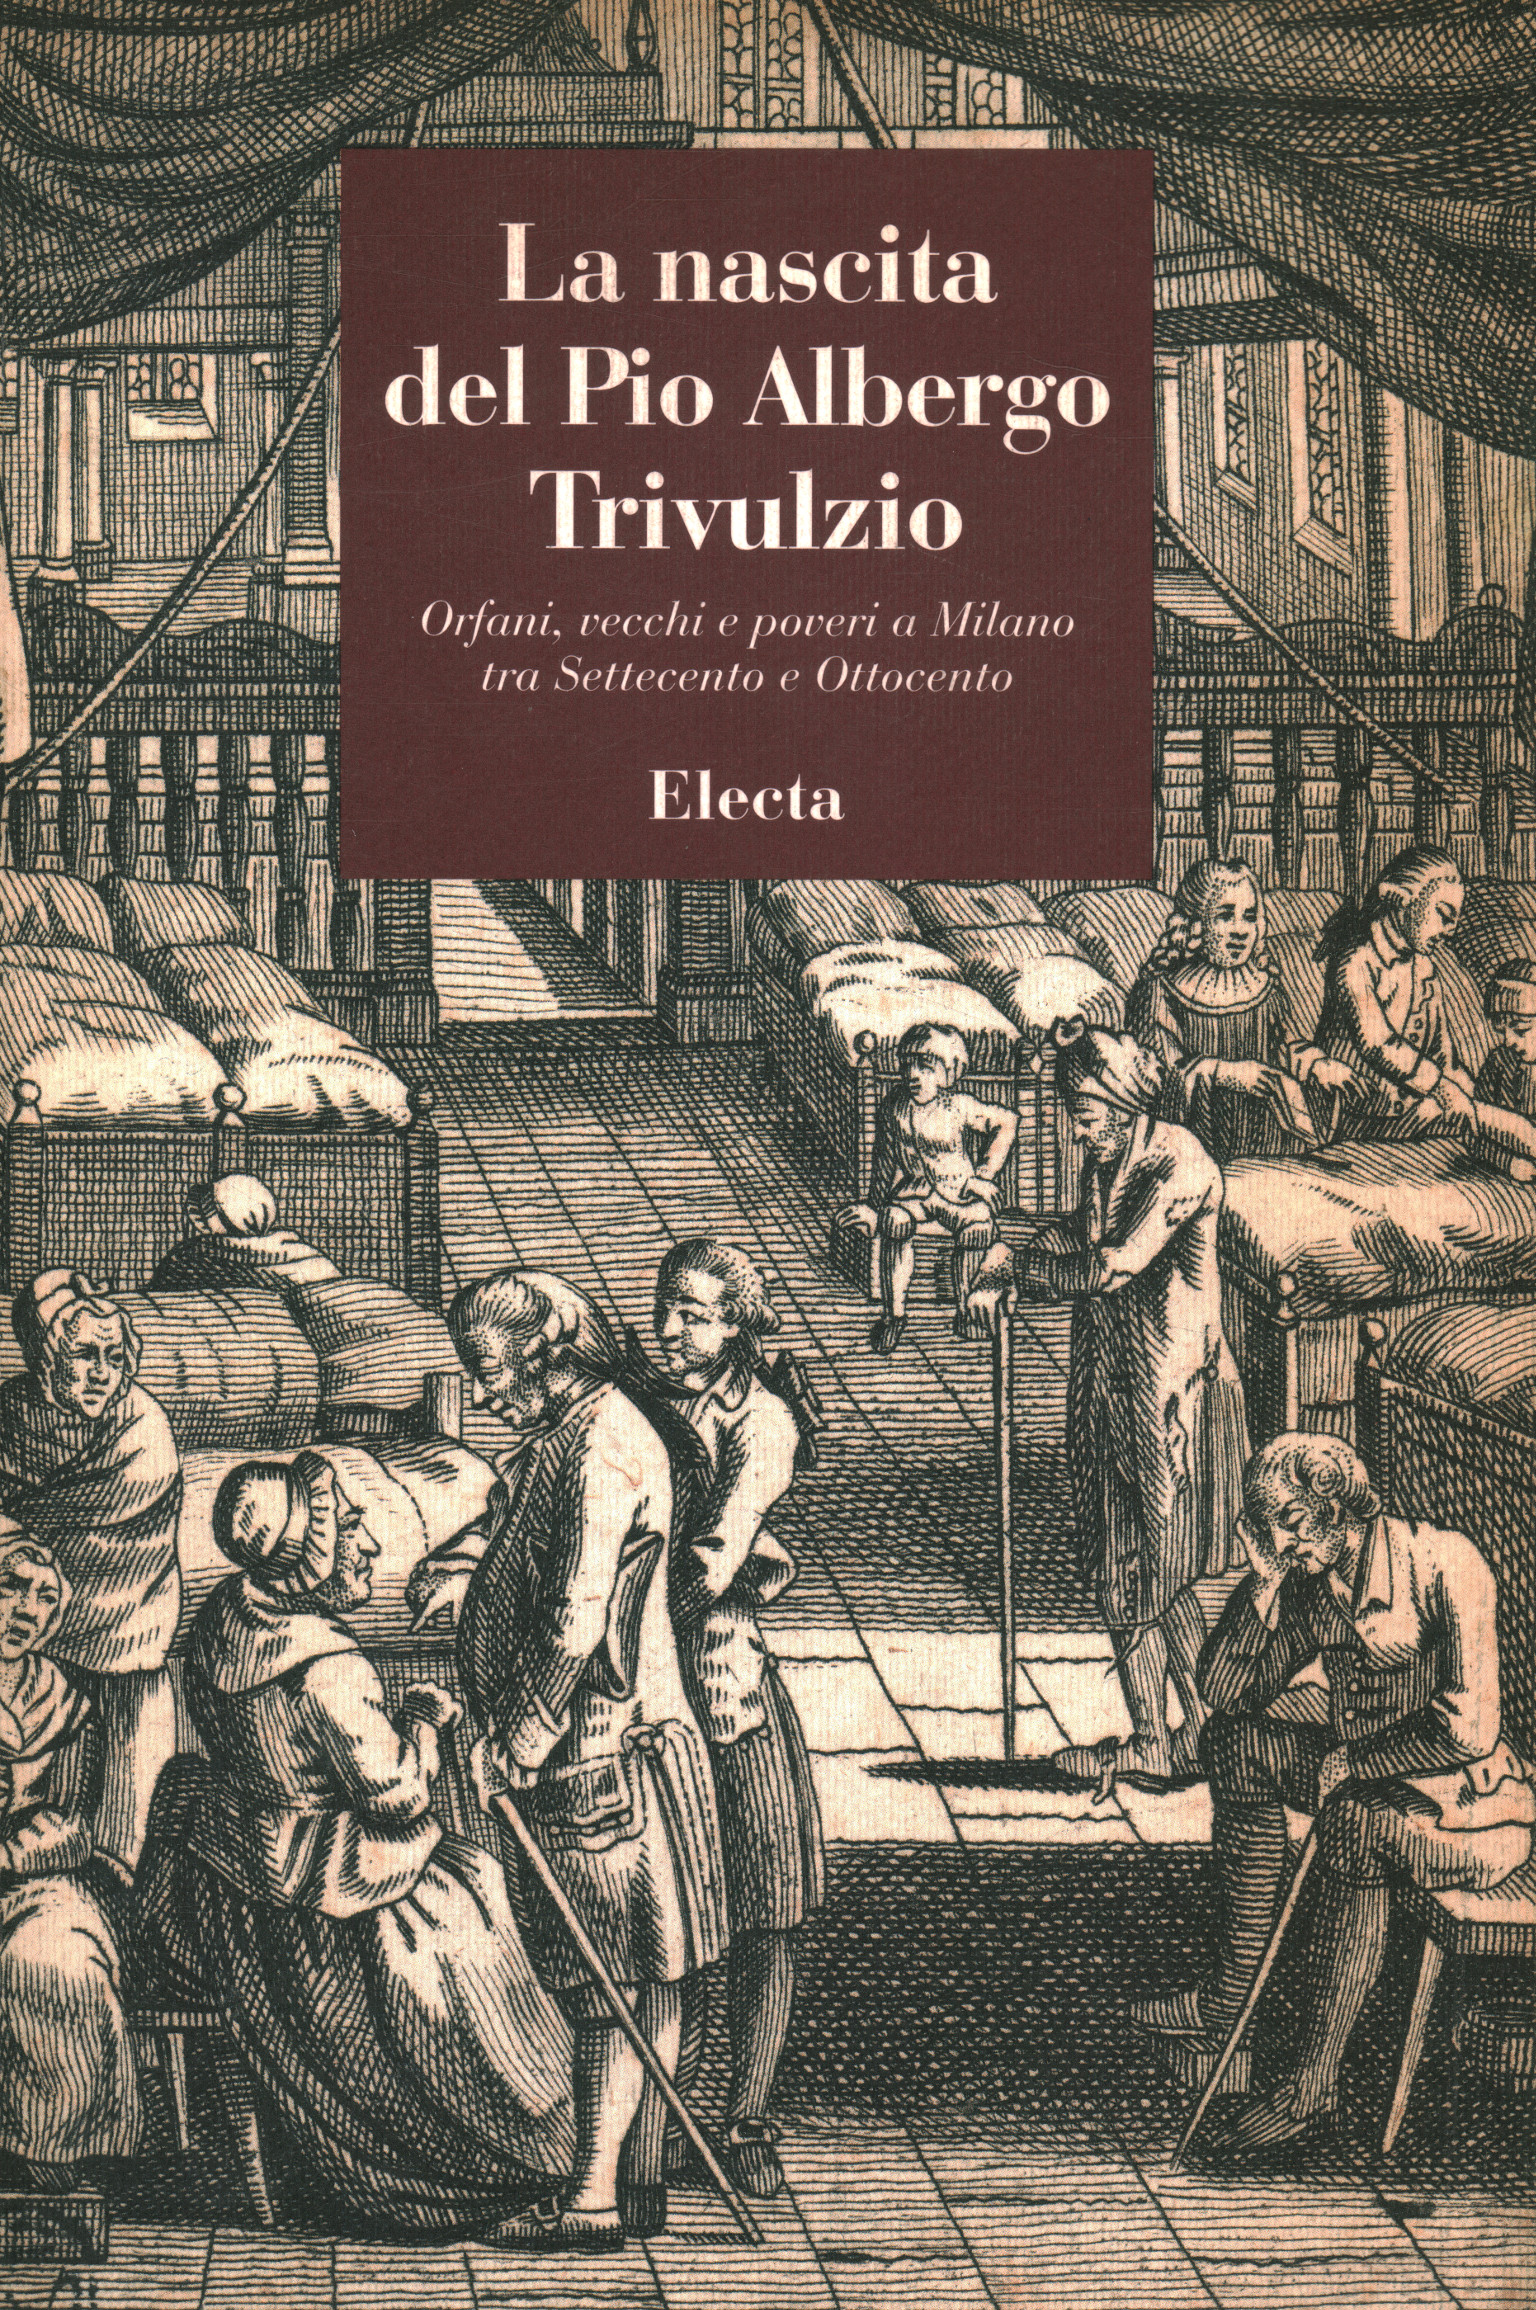 The birth of the Pio Albergo Trivulzio